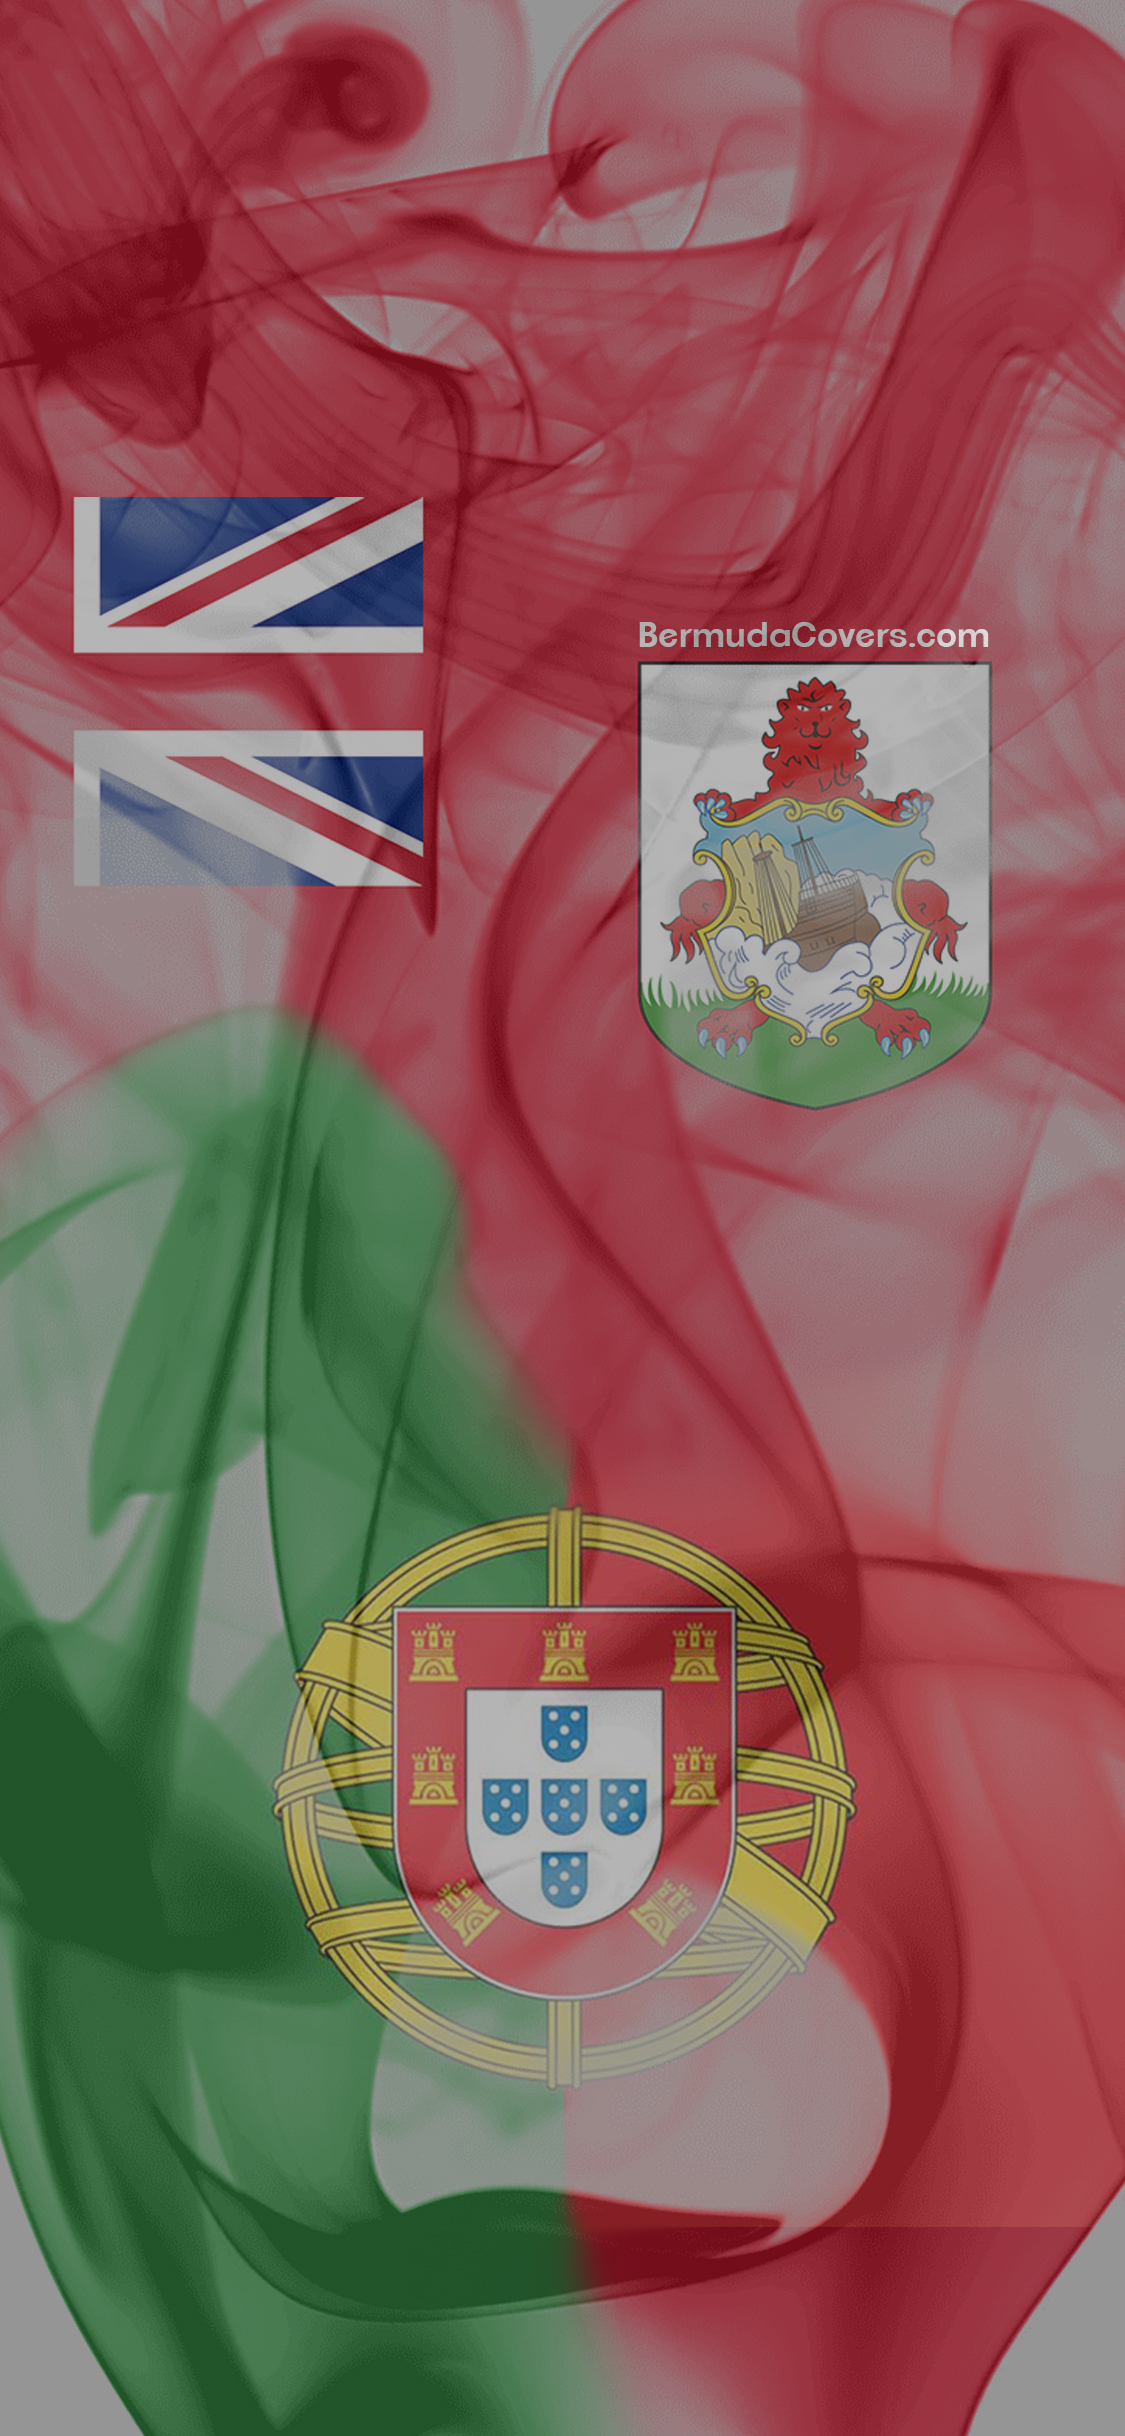 Swirling Bermuda Portugal Flags Bernews Mobile Phone Wallpaper Lock Screen Design Image Photo